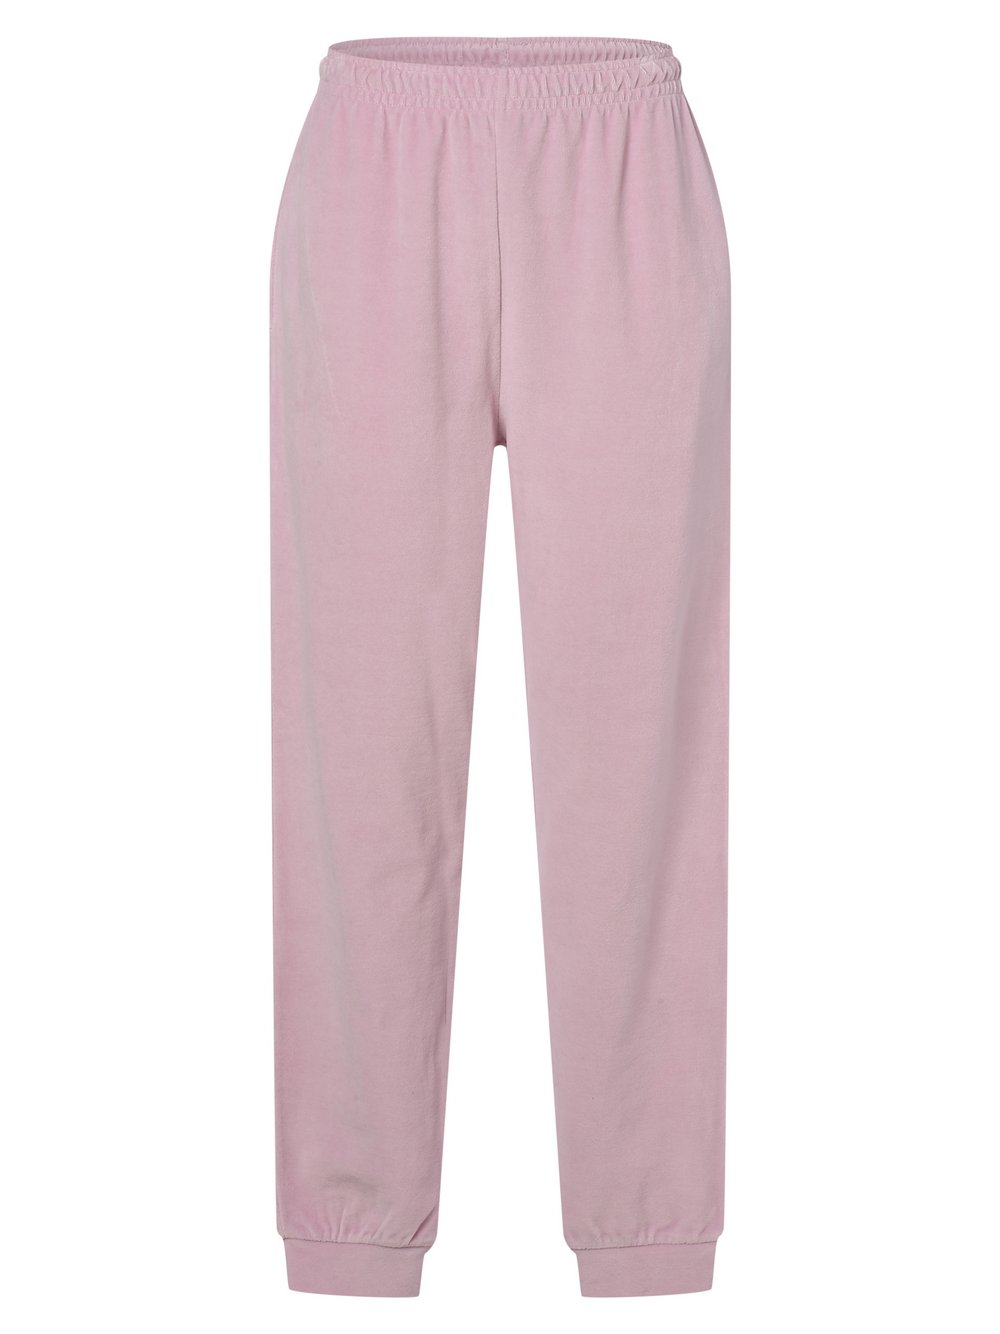 EDITED - Damskie spodnie dresowe – Riley, różowy